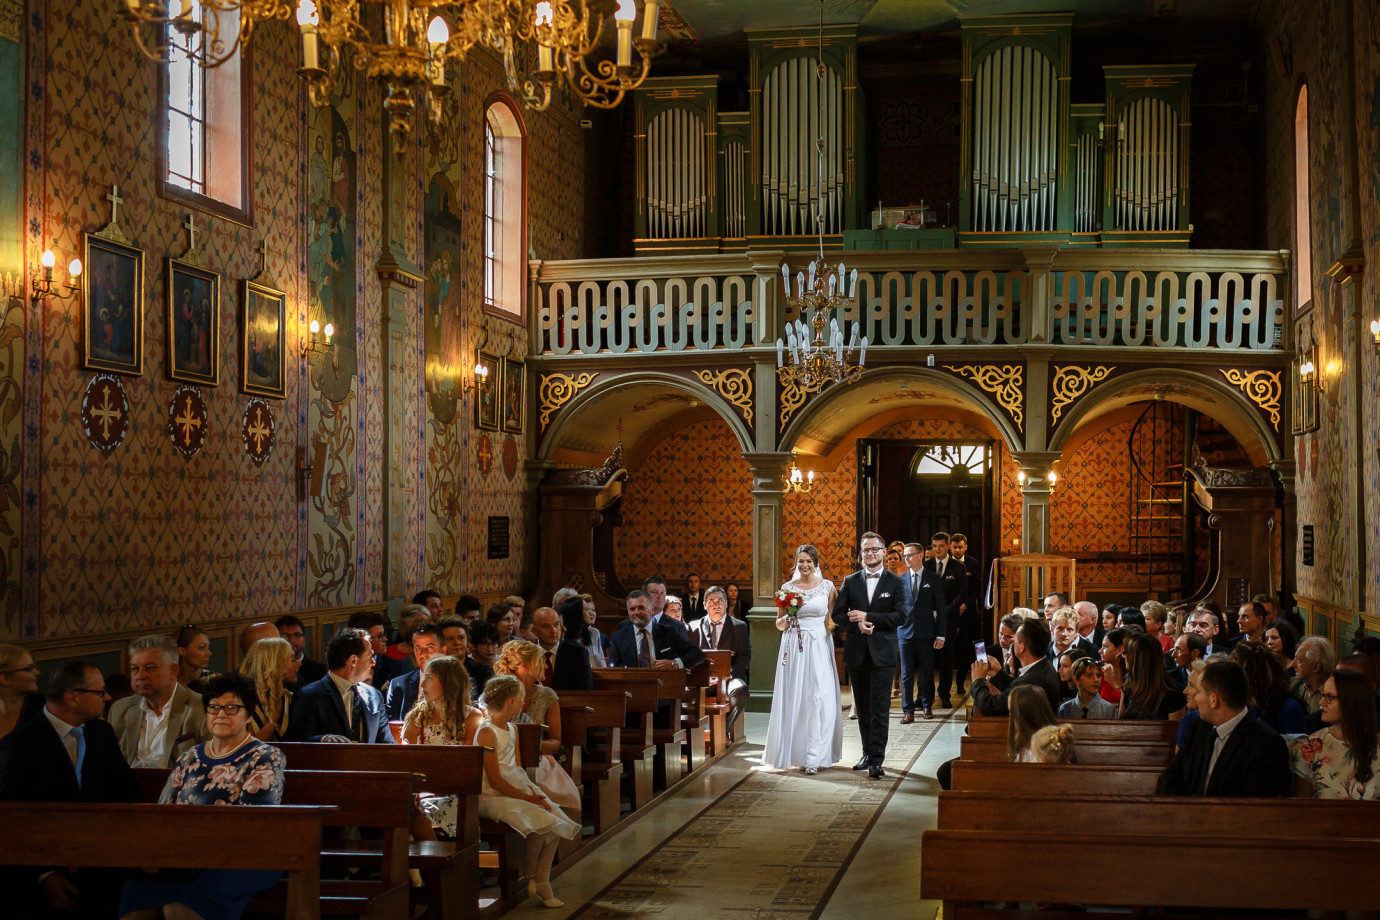 zdjęcia krosno fotograf michal-wisniewski portfolio zdjecia slubne inspiracje wesele plener slubny sesja slubna